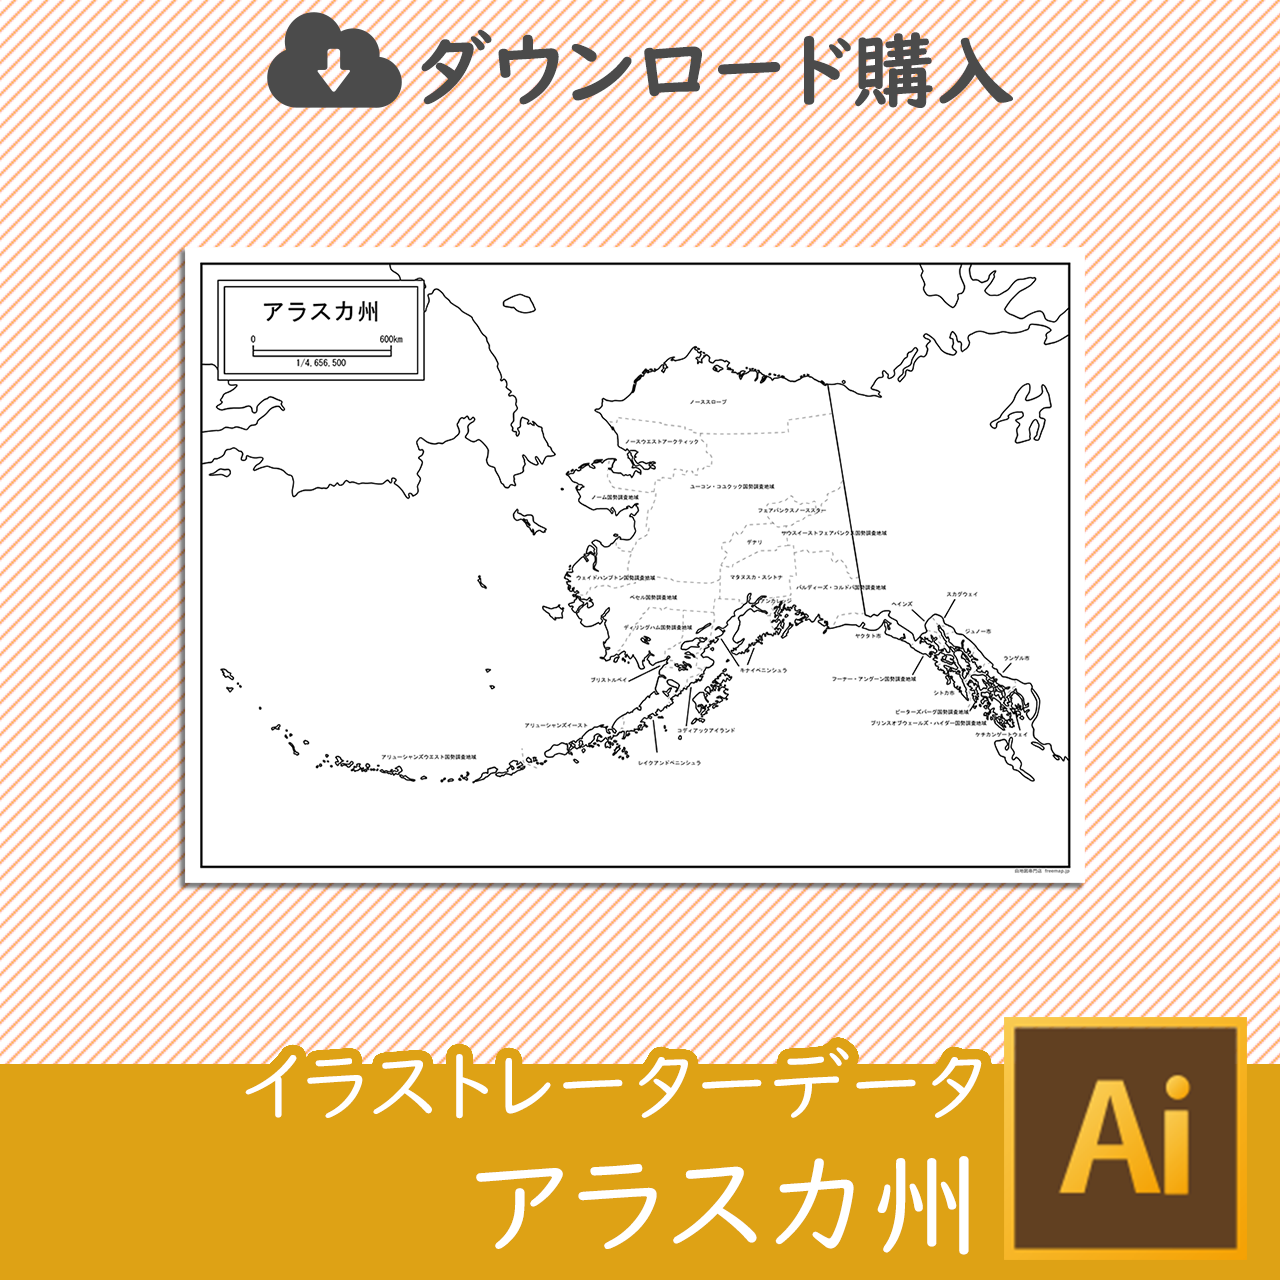 アラスカ州の白地図データのサムネイル画像